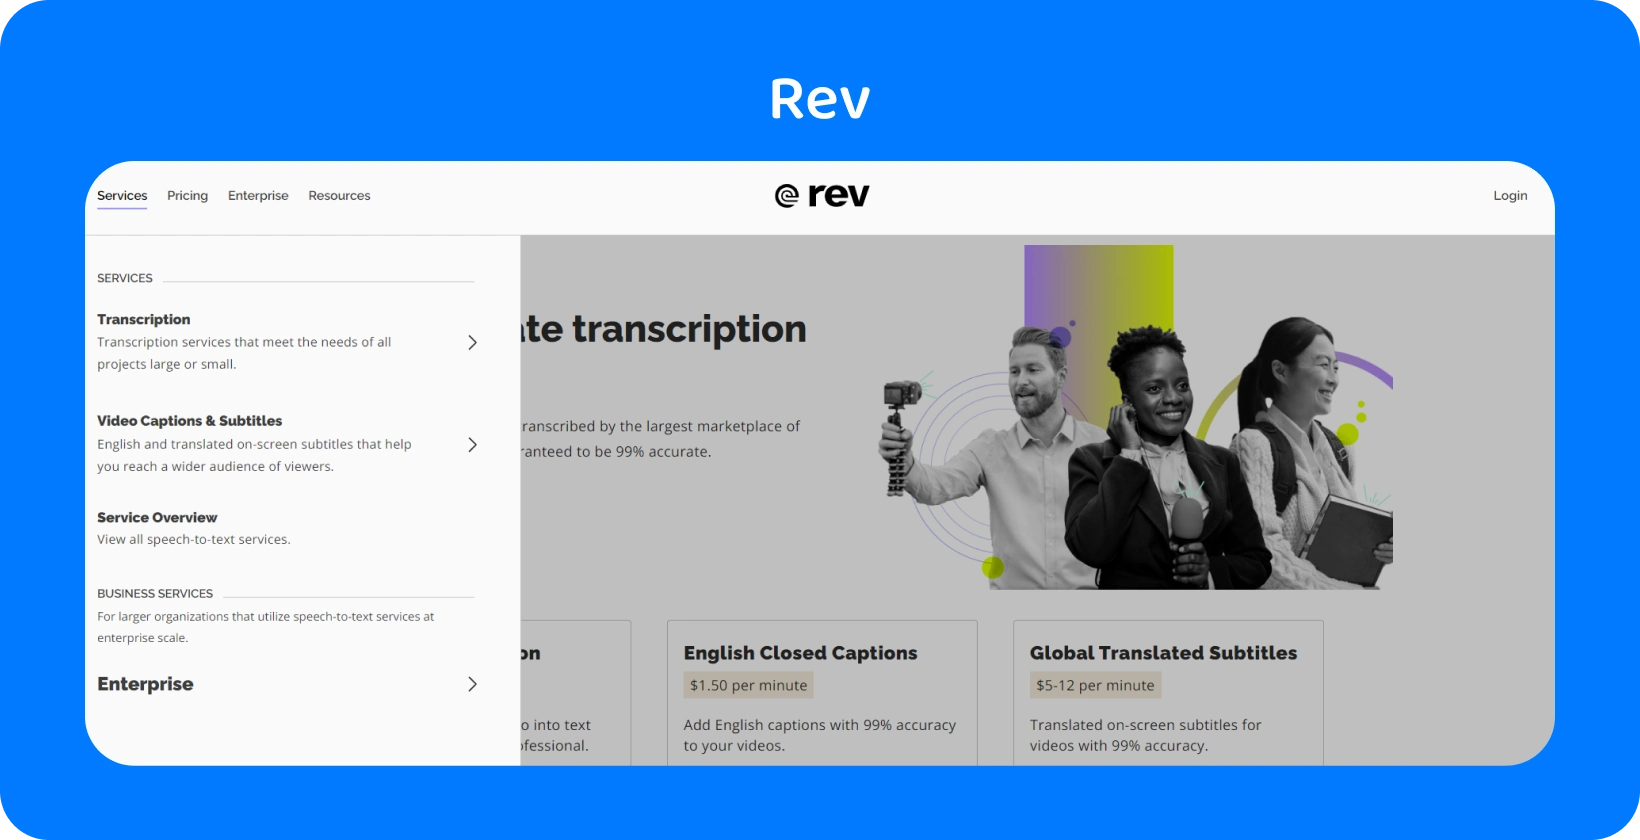 Rev's hjemmeside viser transskriptionstjenester til hurtig og præcis konvertering af lyd til tekst til professionelle.